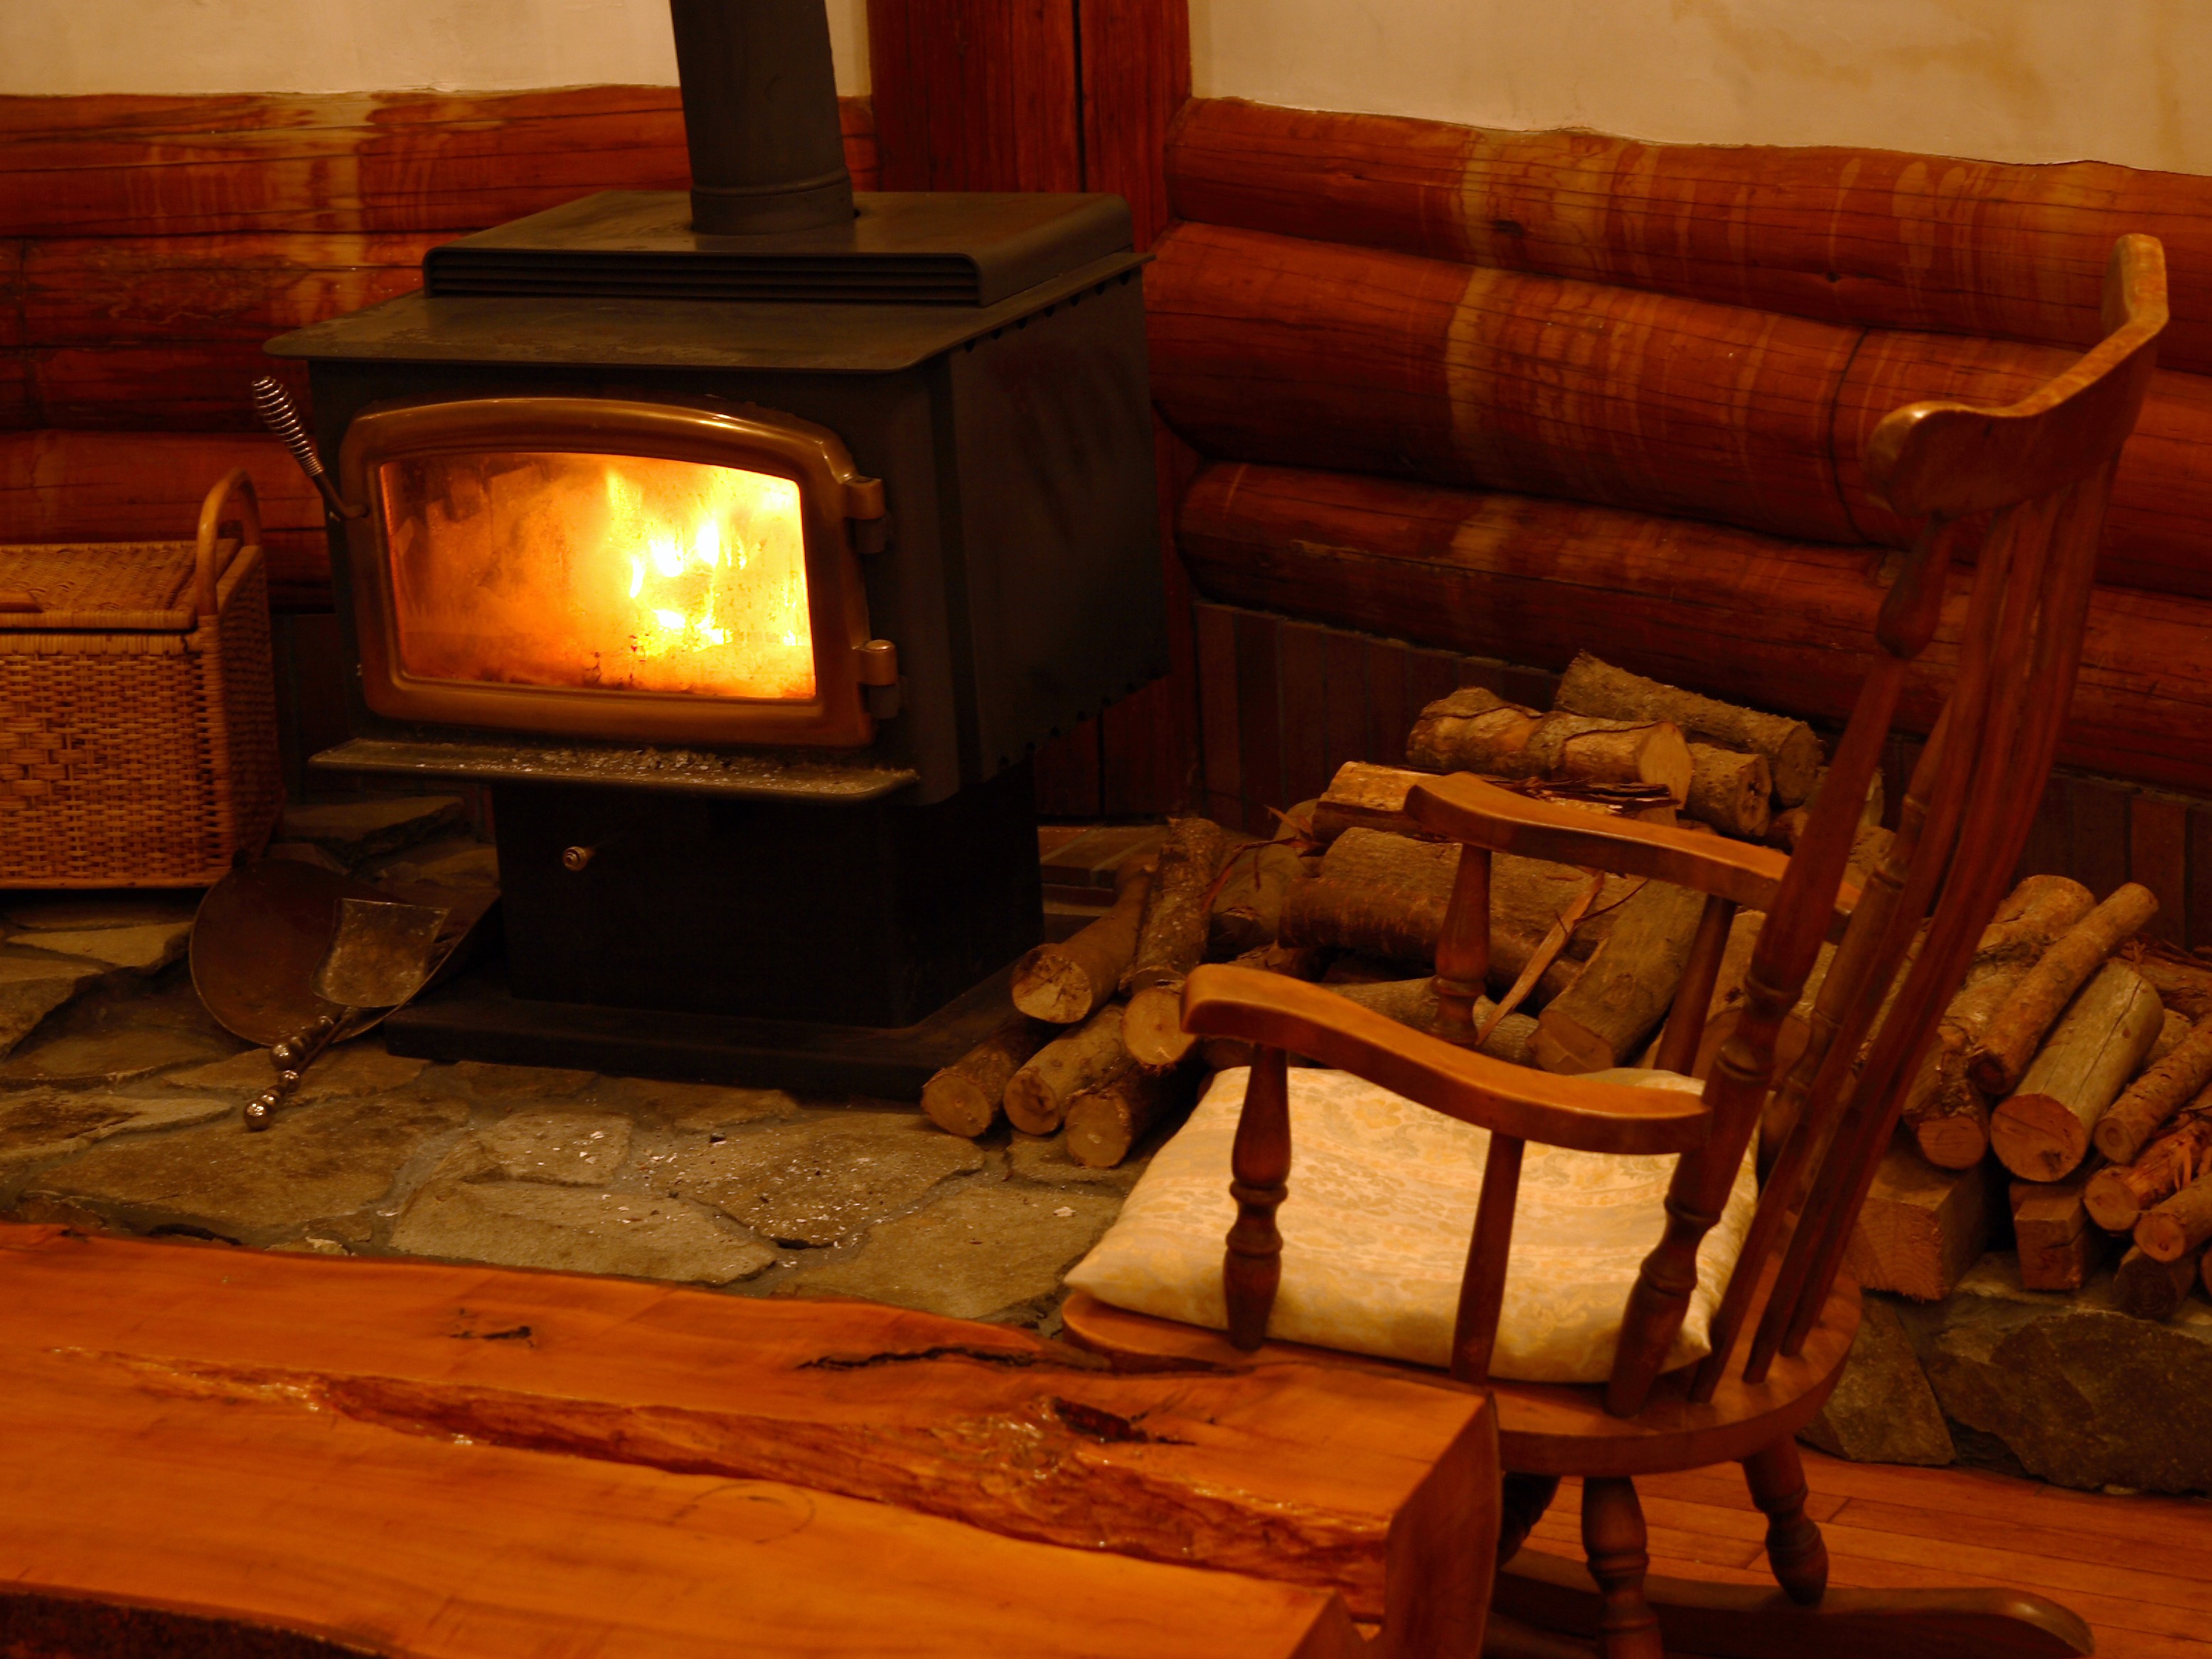 太い薪を入れられる大きな開口部のカナダ製Regencyの薪ストーブ(暖炉)は看板猫もお気に入りの場所